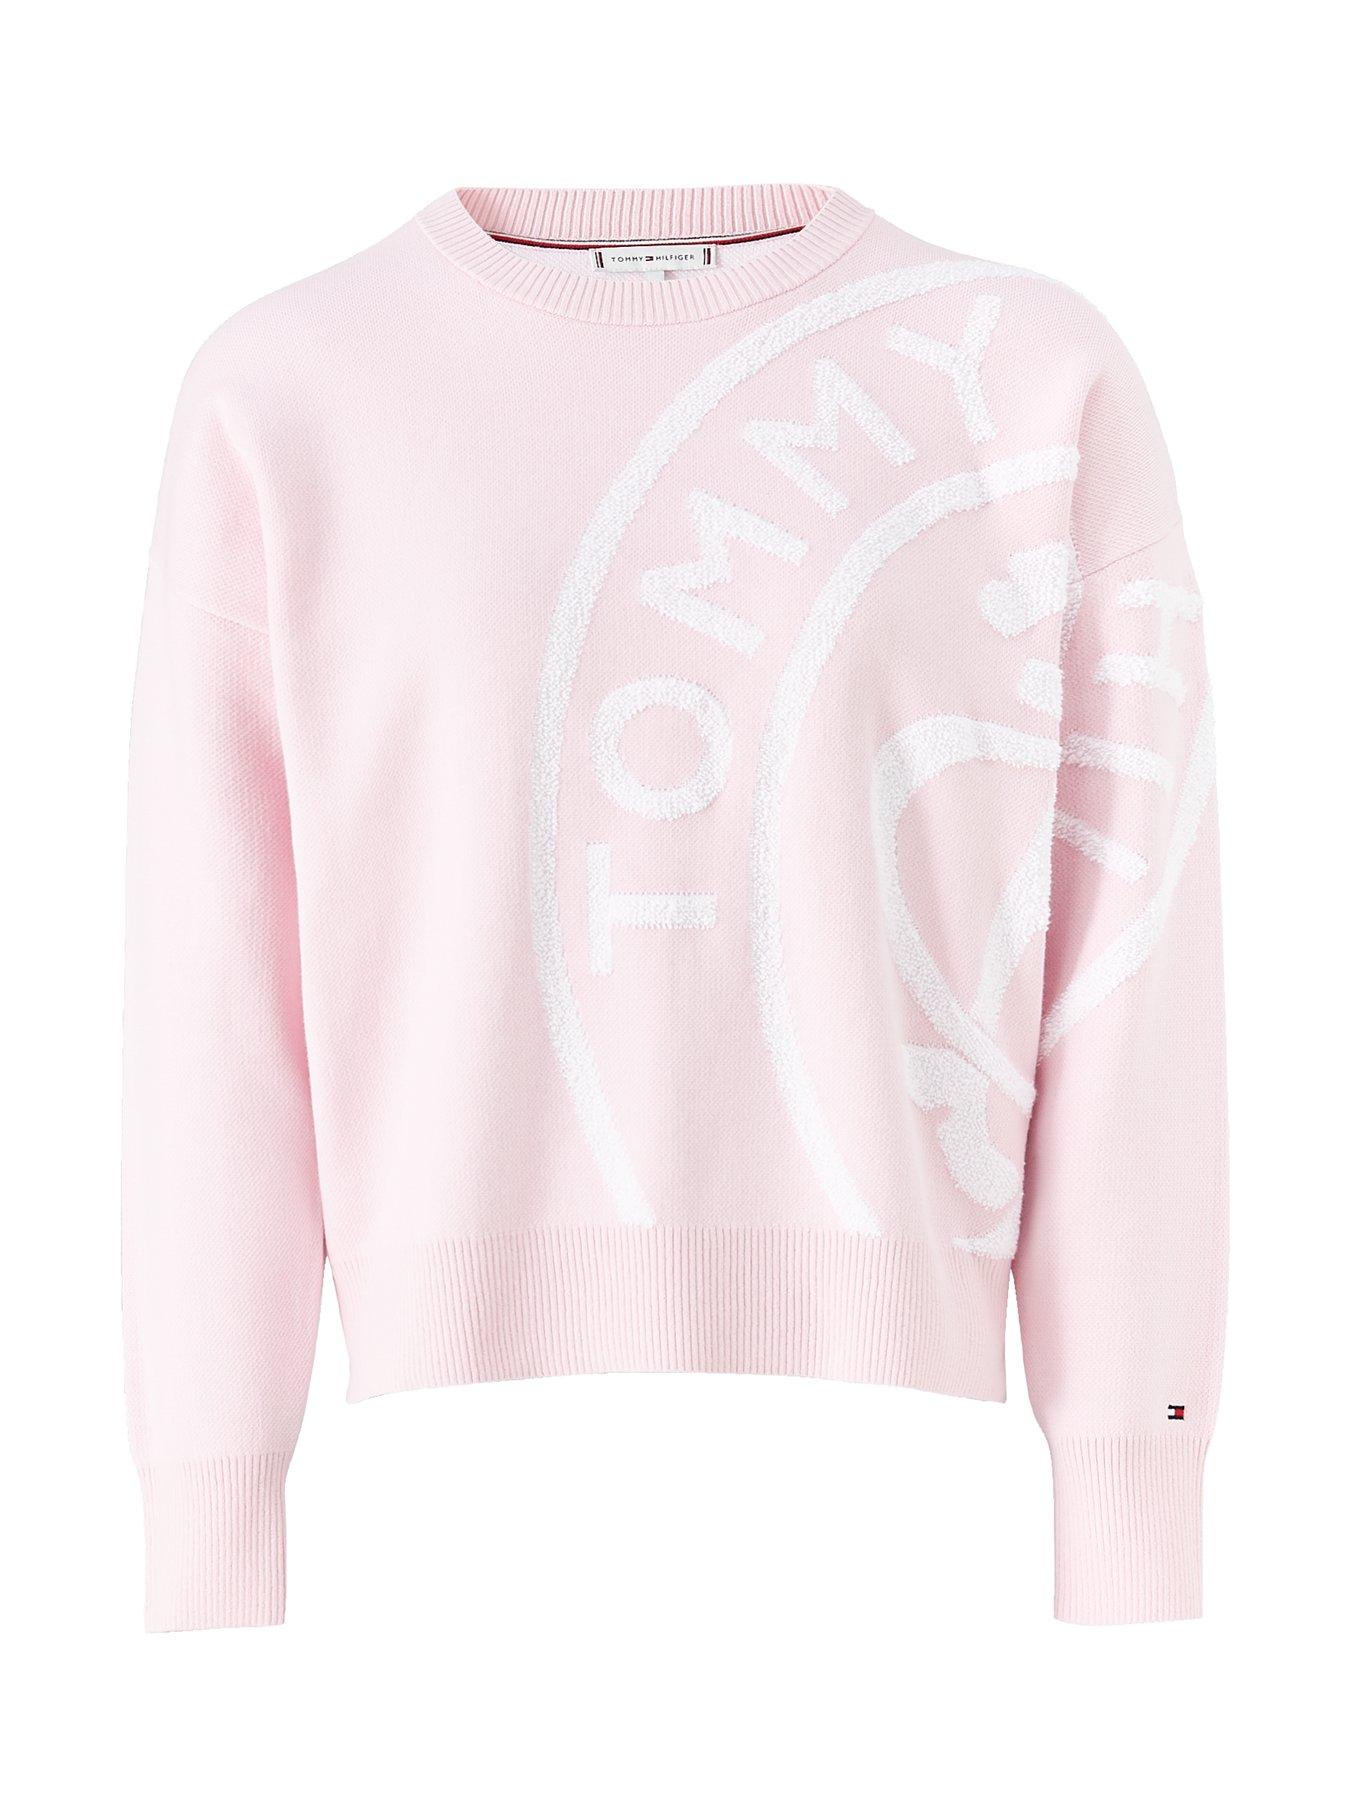 hot pink tommy hilfiger sweatshirt